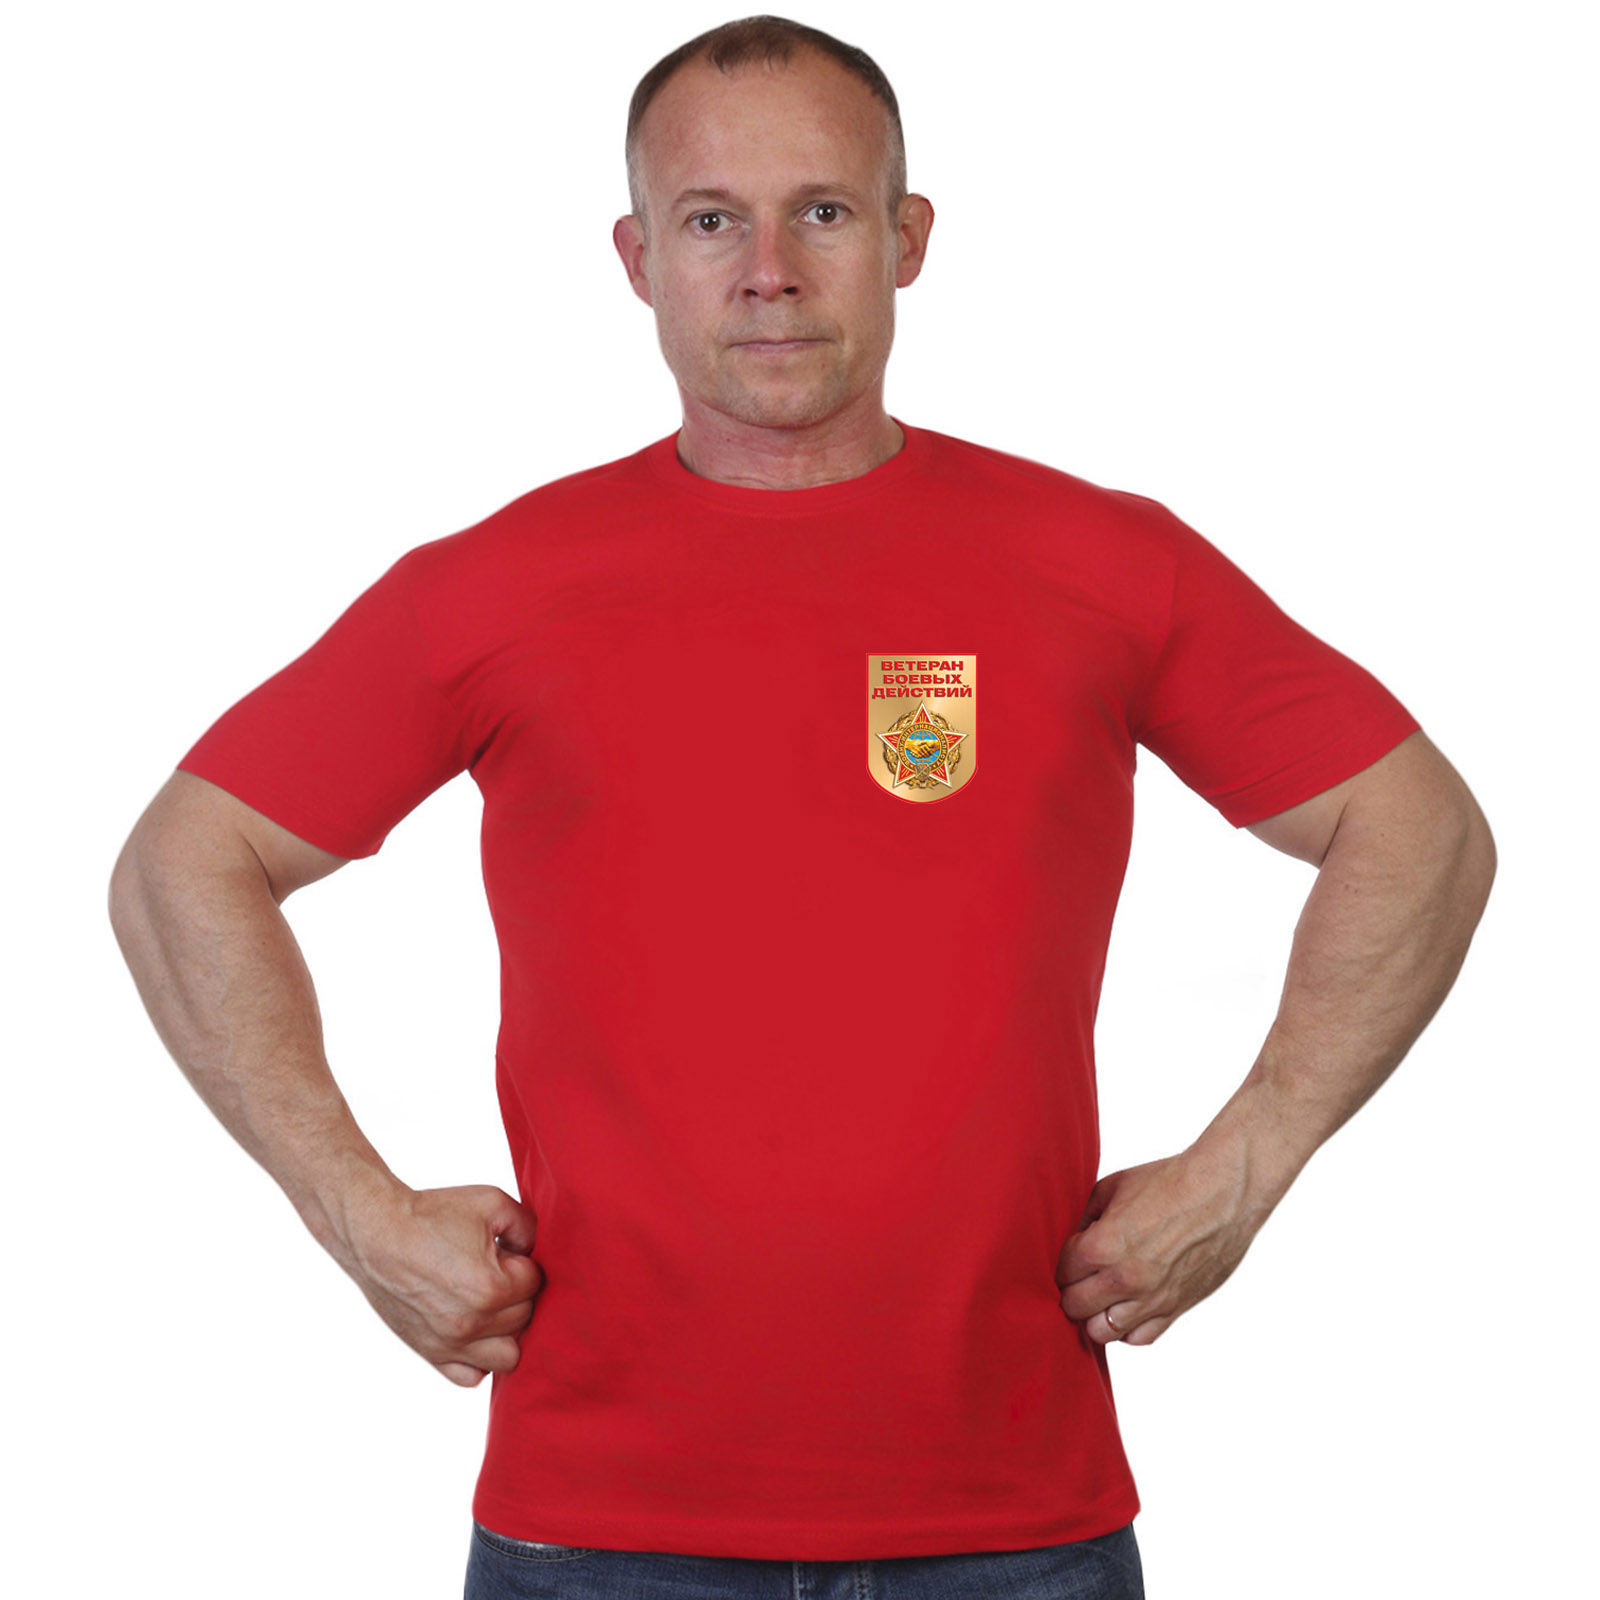 Красная футболка с термотрансфером "Ветеран боевых действий" 